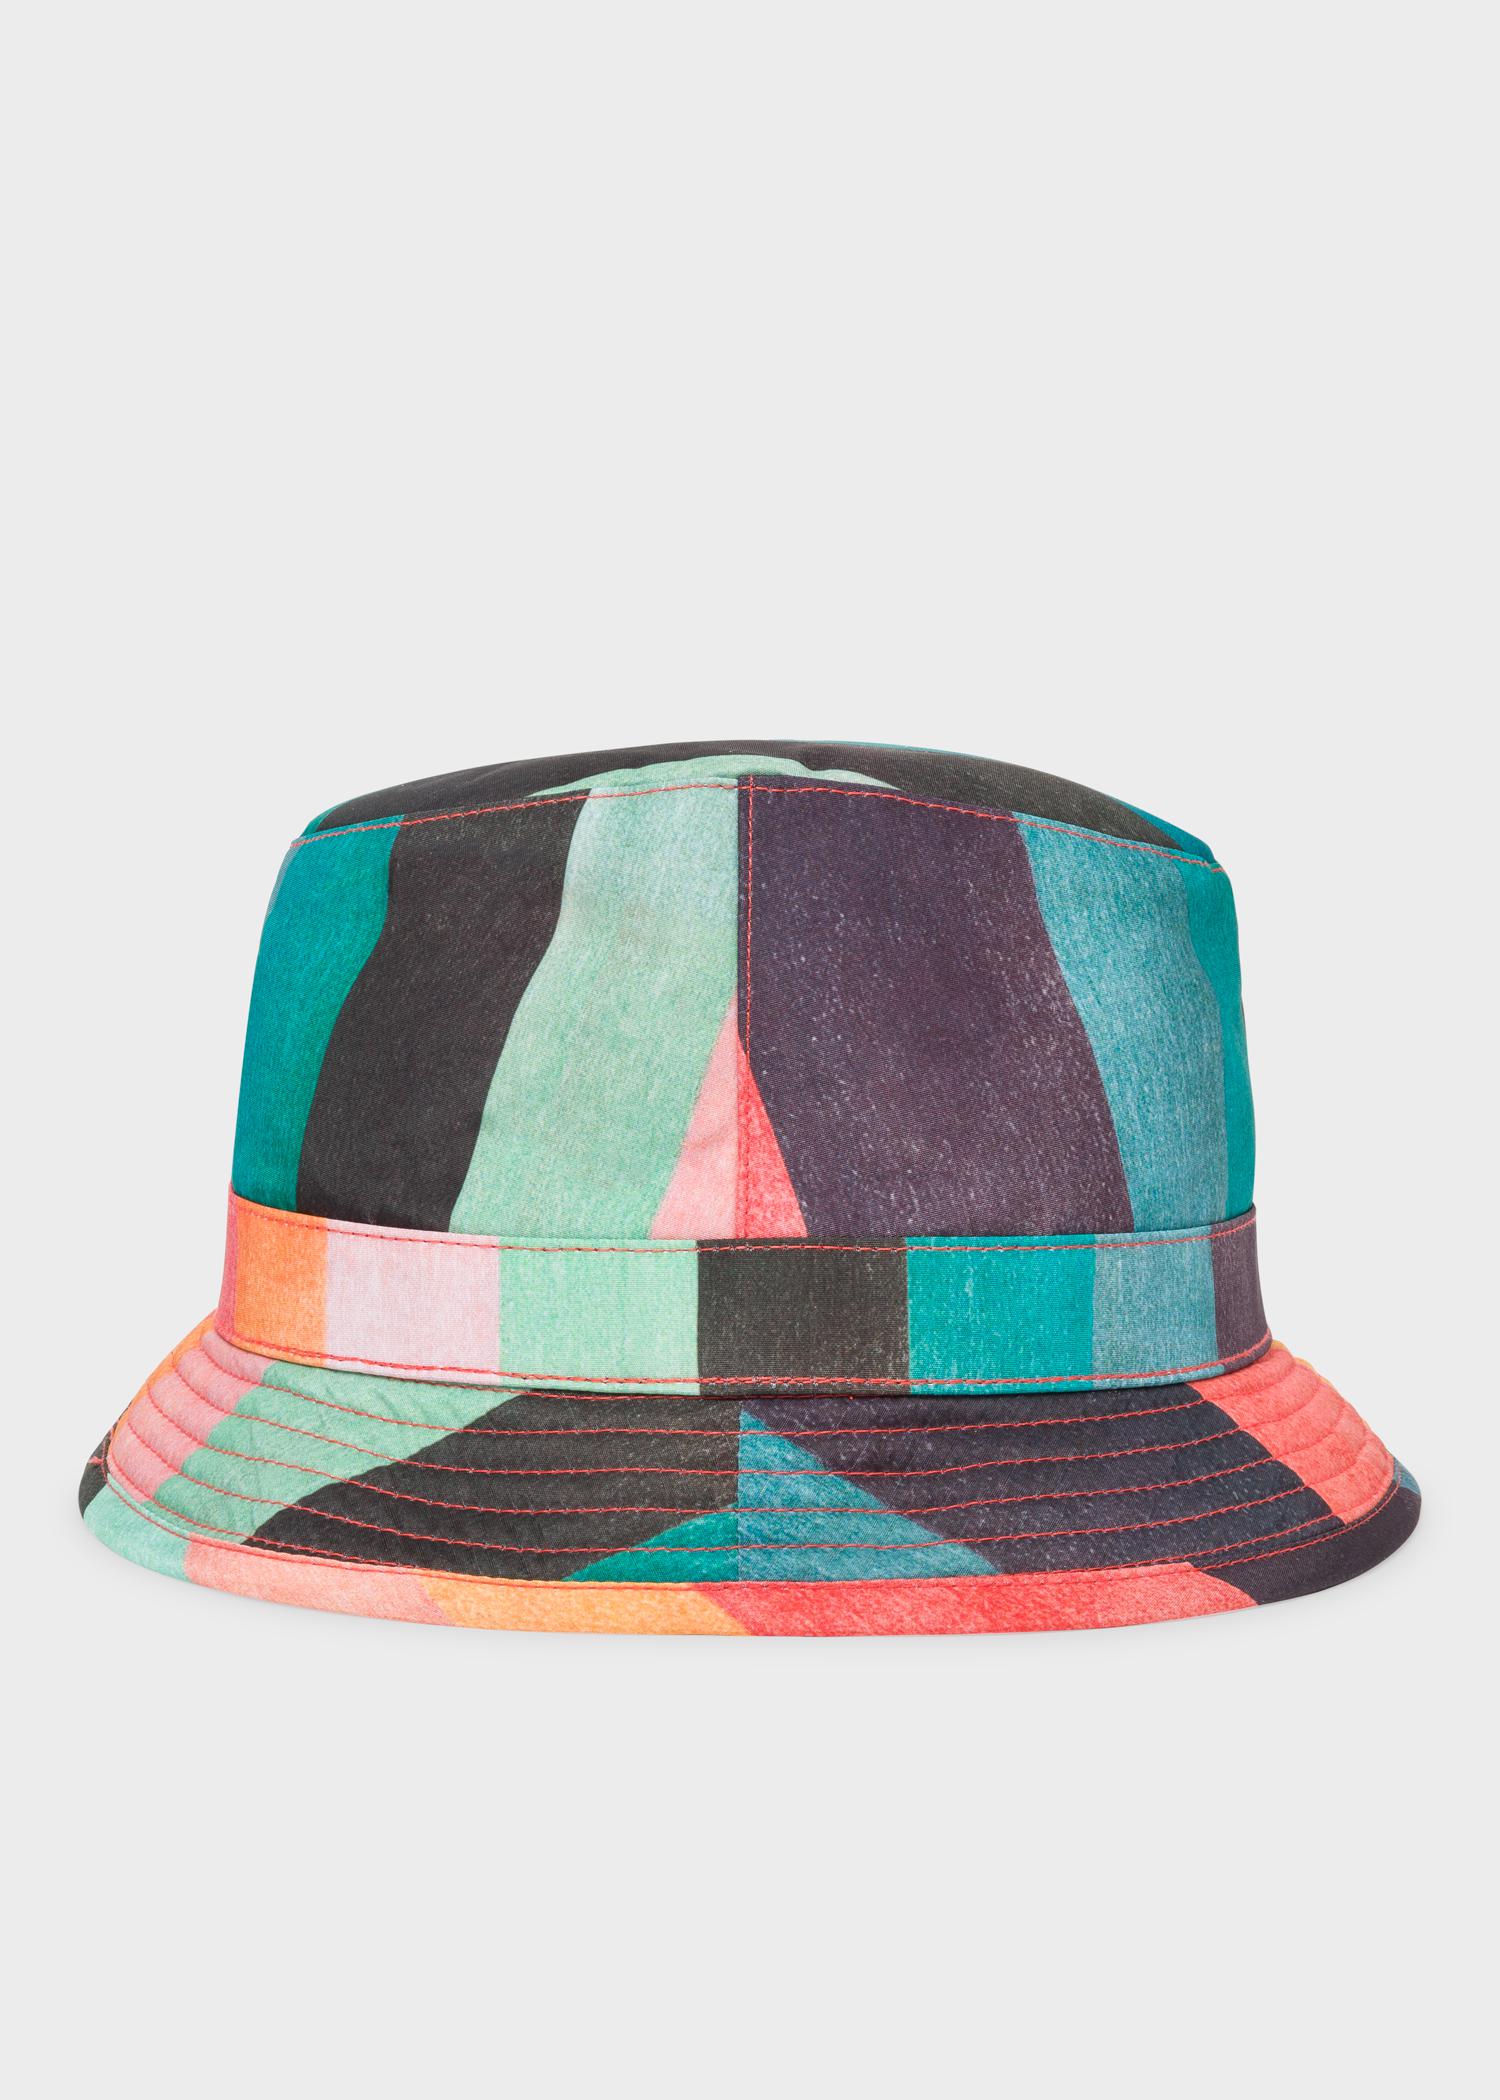 Paul Smith Synthetic 'Artist Stripe' Bucket Hat for Men - Lyst